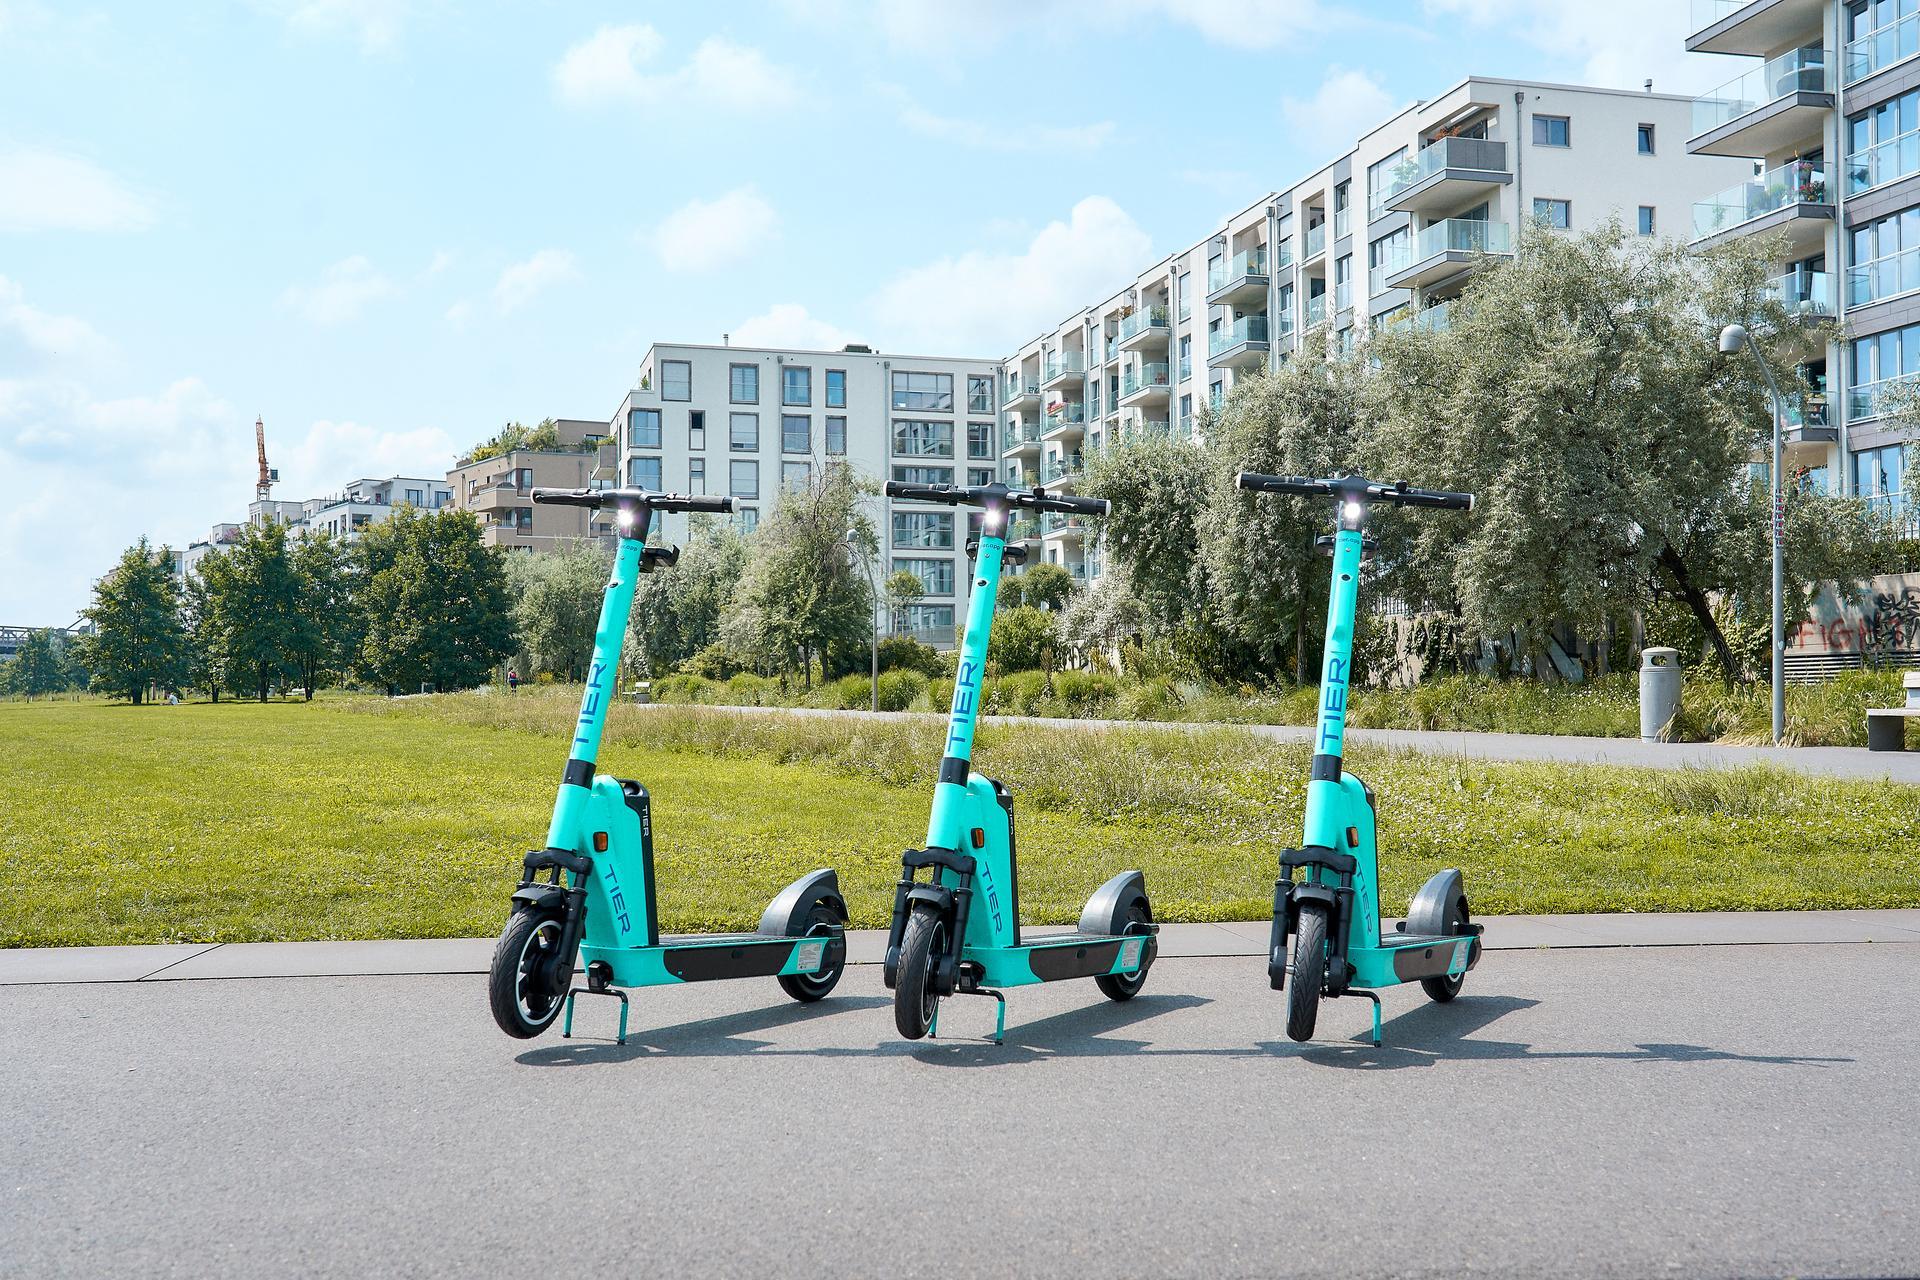 Micro-mobility huge potential in Copenhagen | TIER Blog